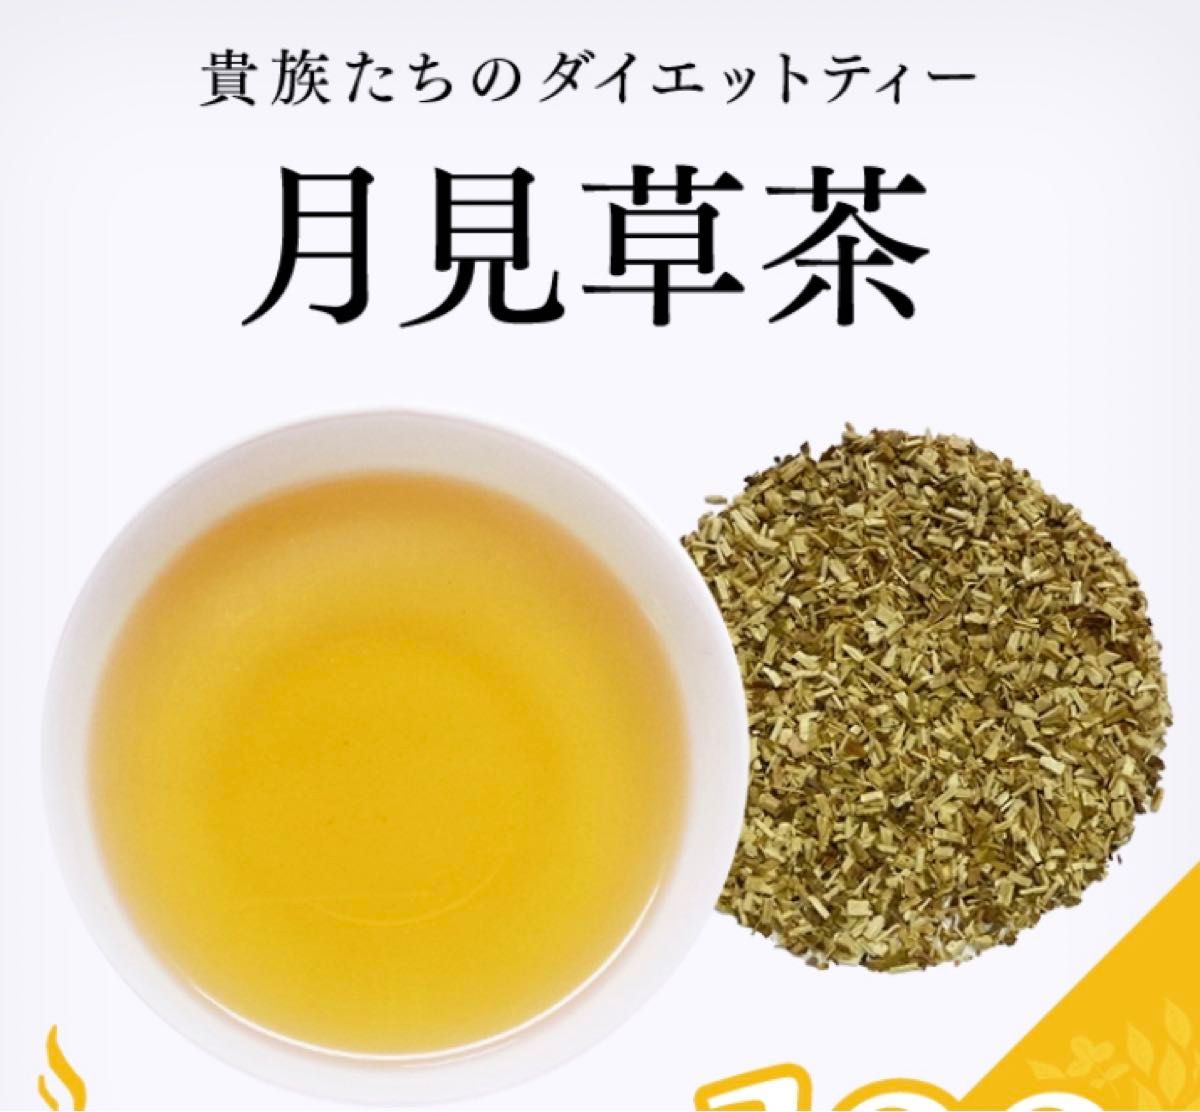 【2g×30P】7種 野草茶 健康茶 お茶 スギナ茶 桑の葉茶 どくだみ茶 よもぎ茶 柿の葉茶 ビタミン ミネラル 温活 クーポン